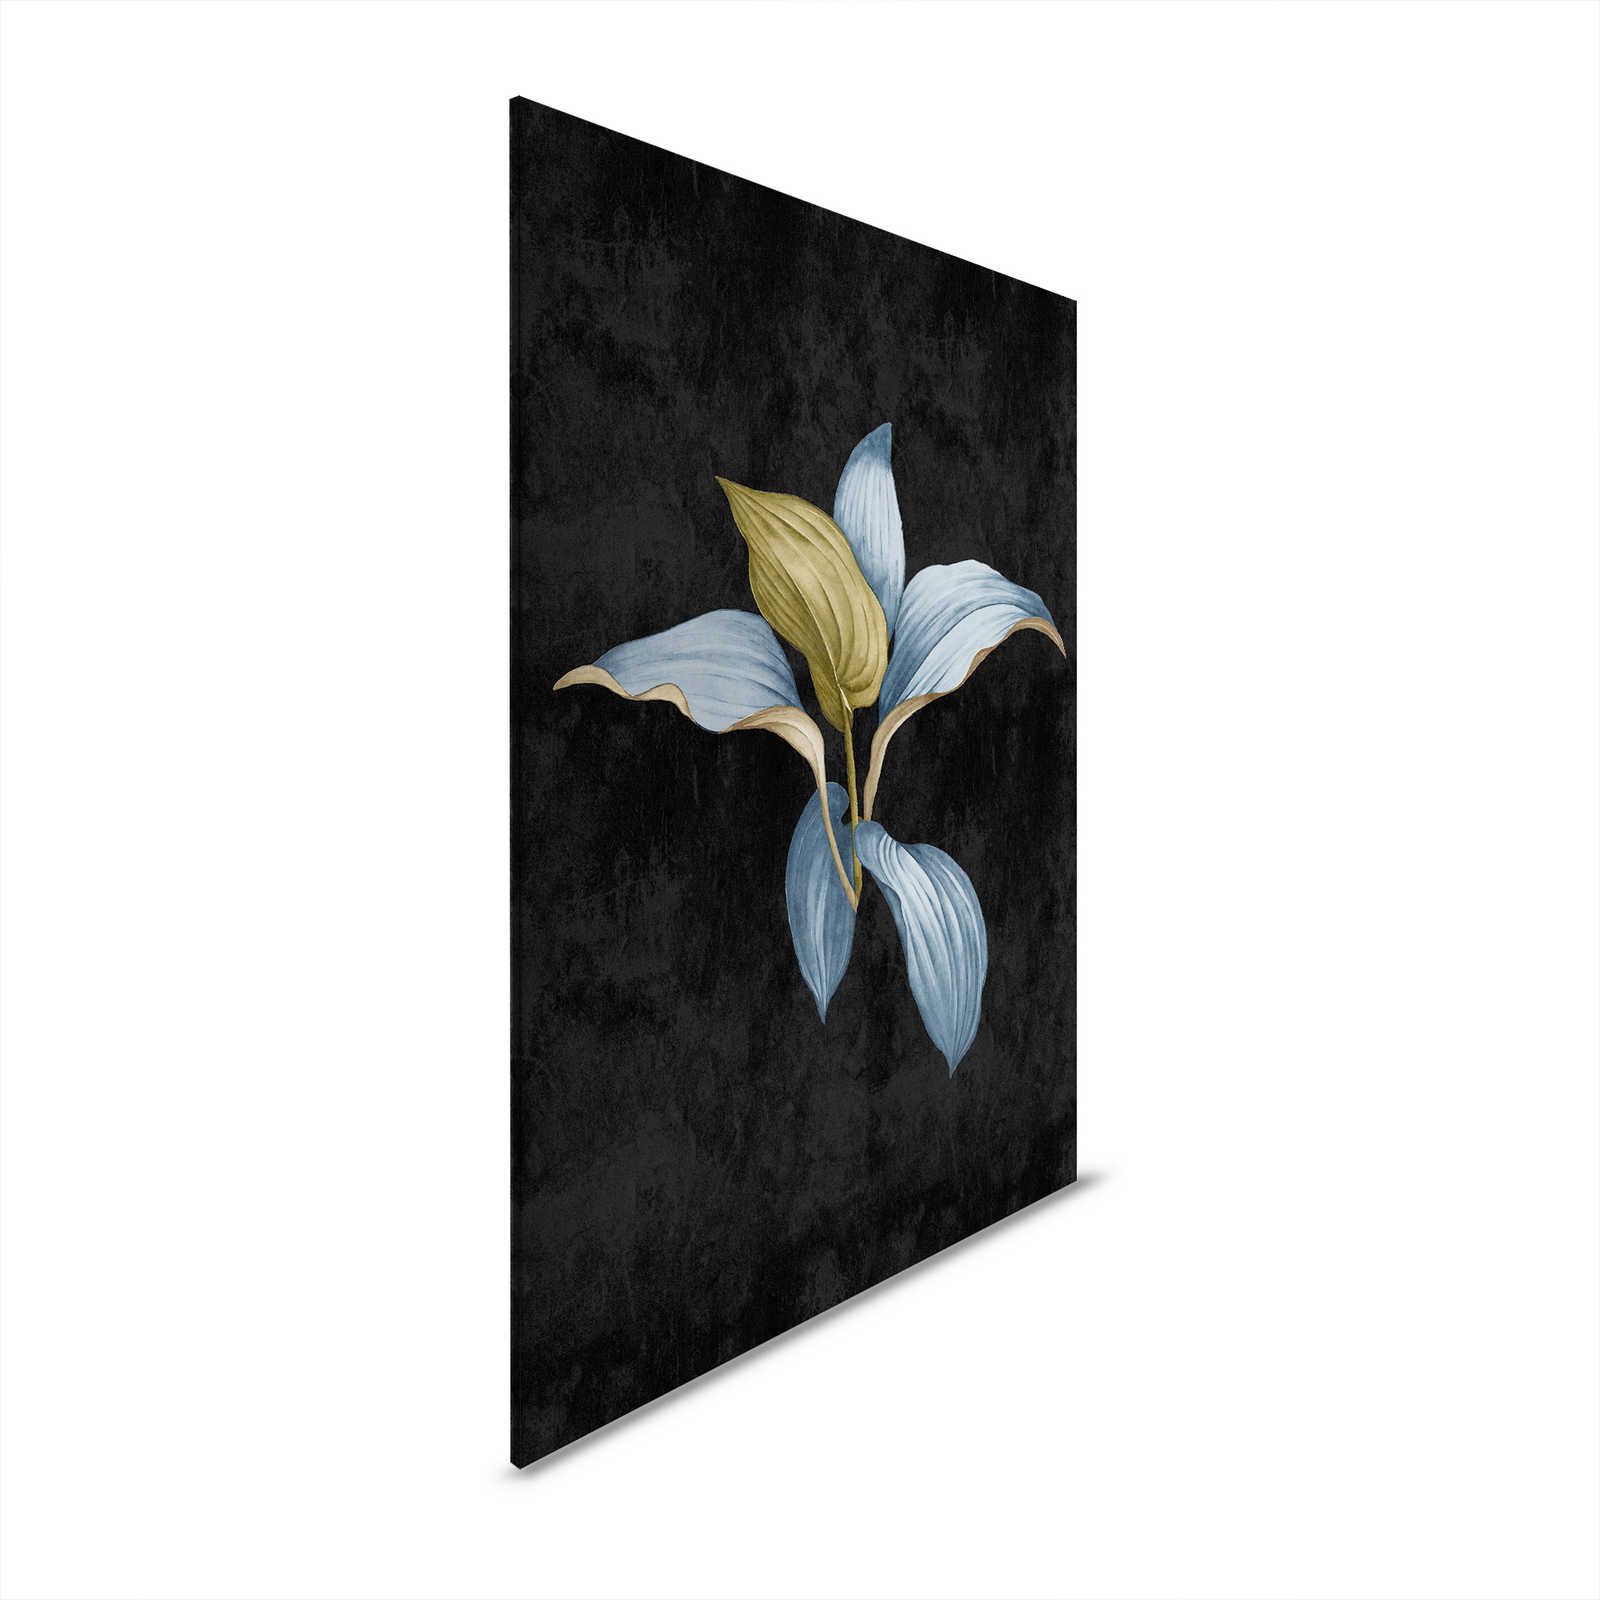 Fiji 3 - Donker canvas schilderij Botanisch ontwerp in blauw & groen - 0.60 m x 0.90 m
